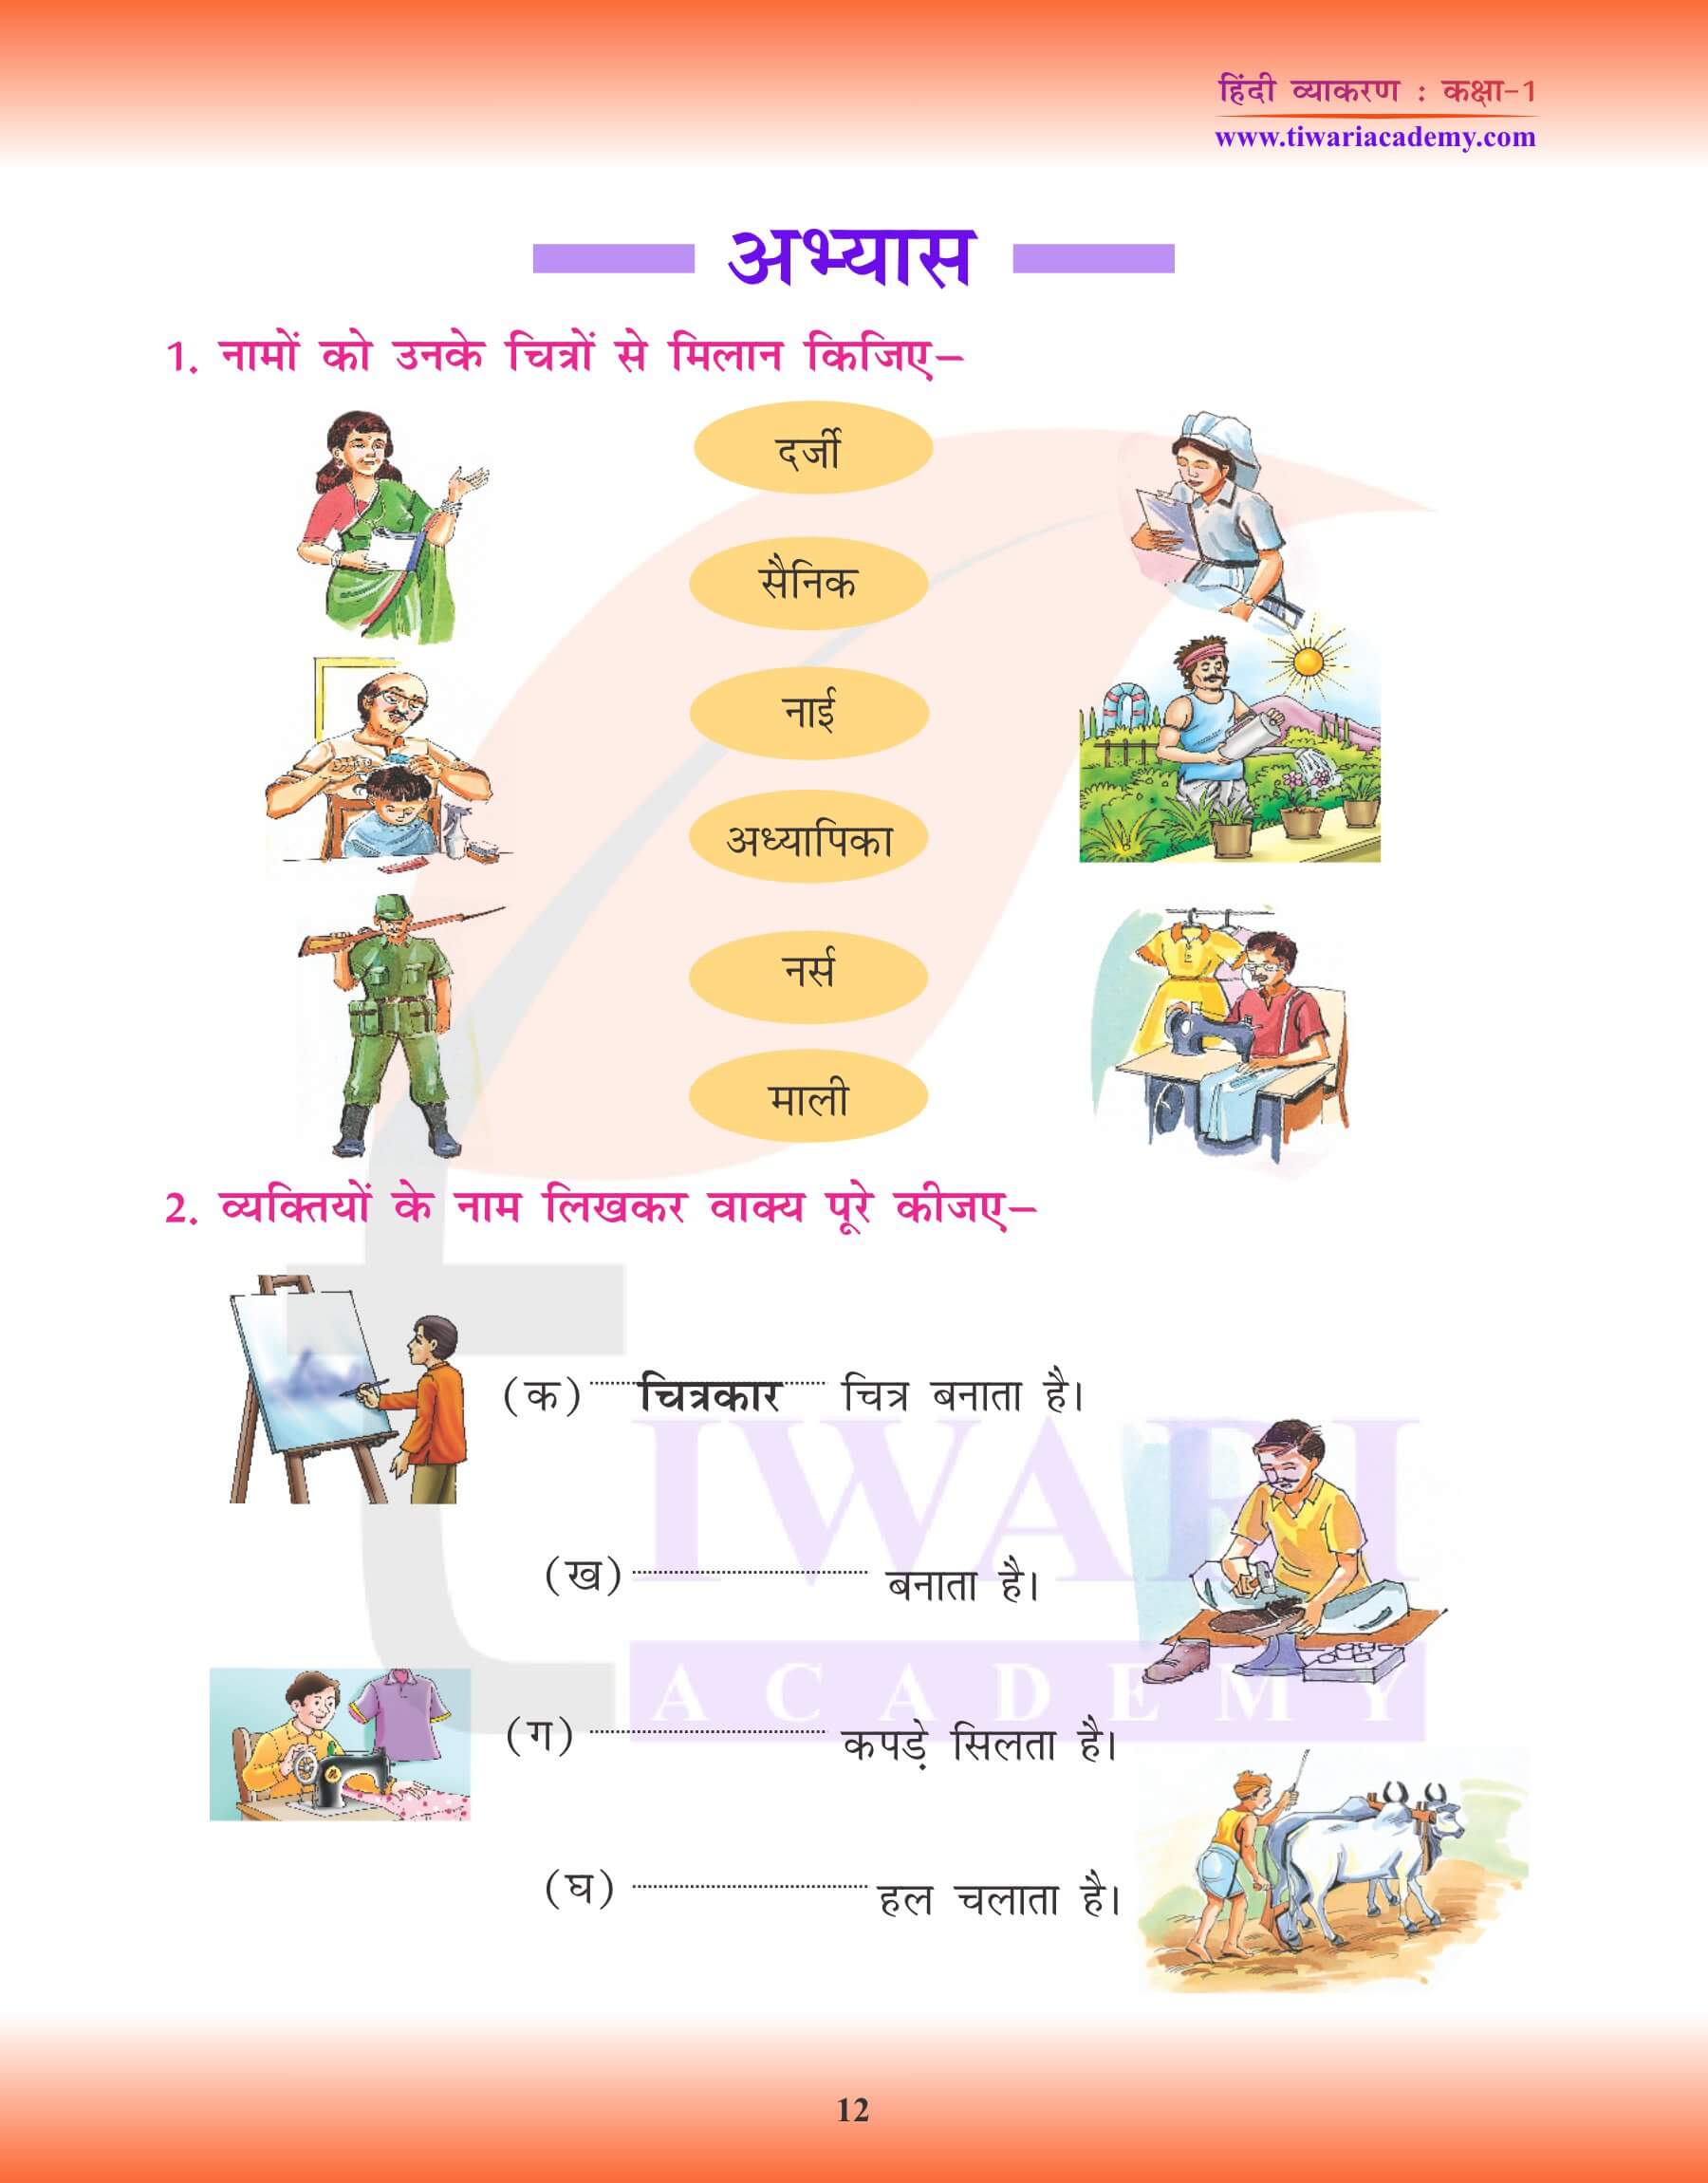 कक्षा 1 के लिए हिंदी व्याकरण में संज्ञा के लिए मिलान करना